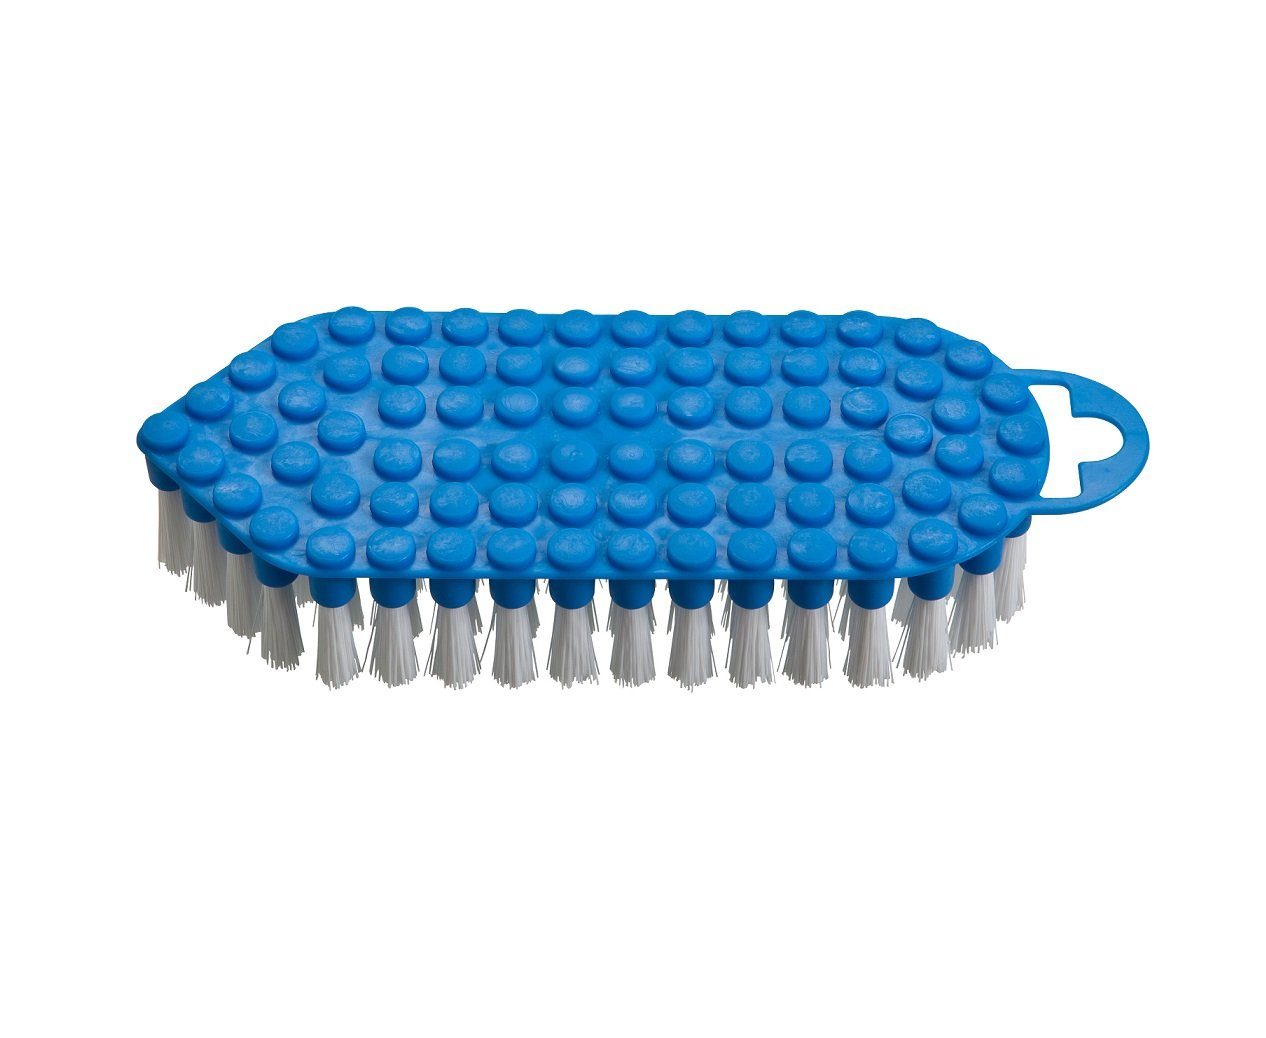 haug bürsten Reinigungsbürste 60325, flexible Scheuerbürste mit harten Borsten, blau, mit Rundungen und Kanten, aus PP - Made in Germany | Spülbürsten